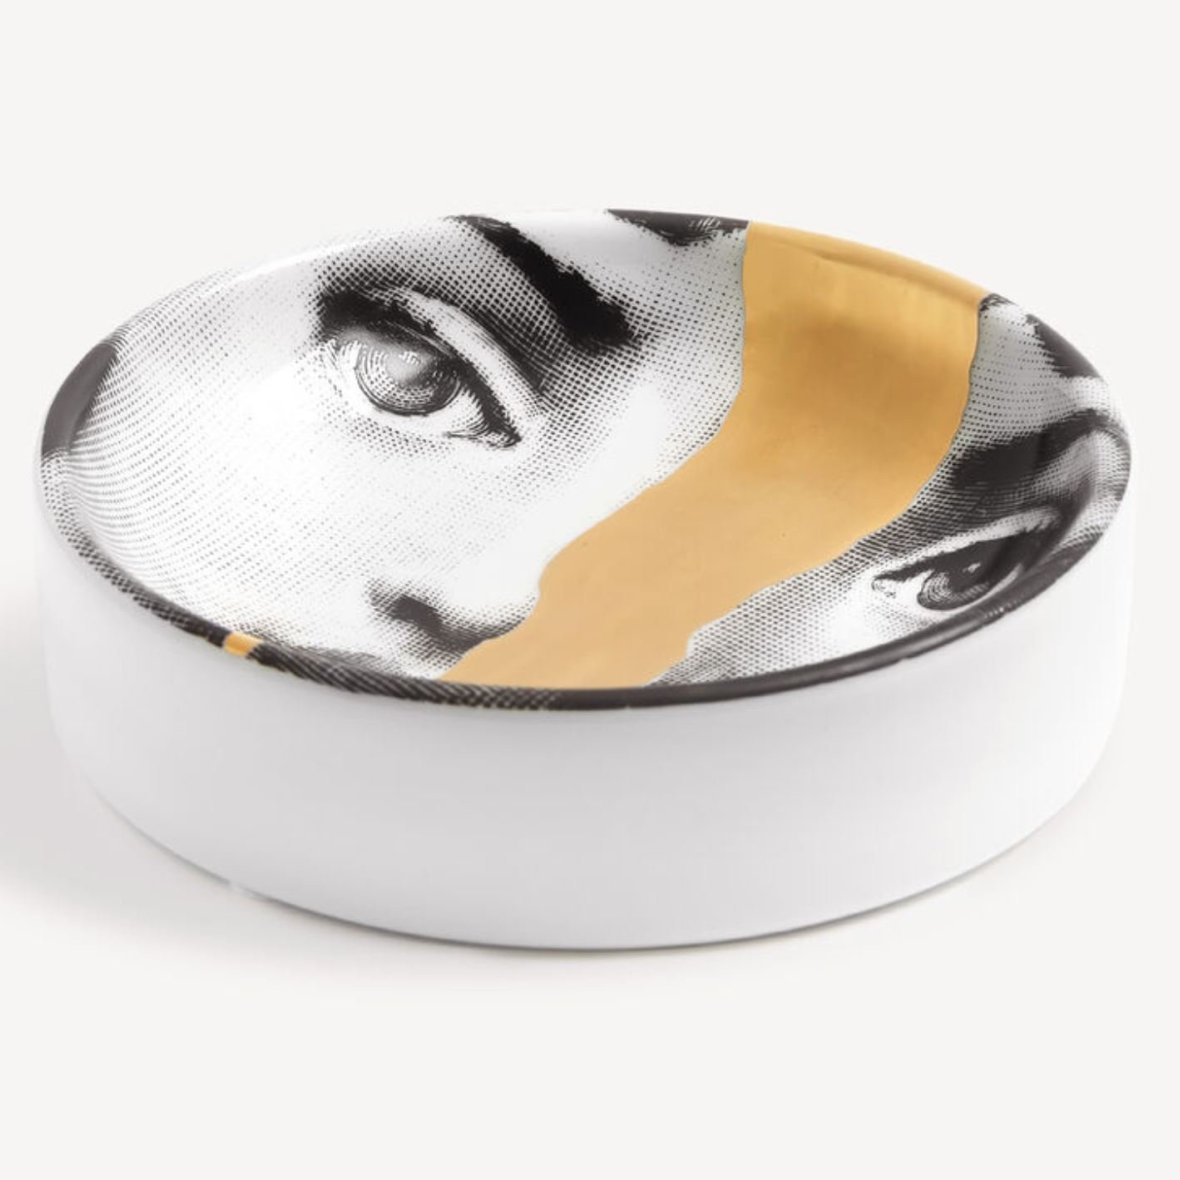 round-ashtray-tema-e-variazioni-n-10-black-white-gold-2